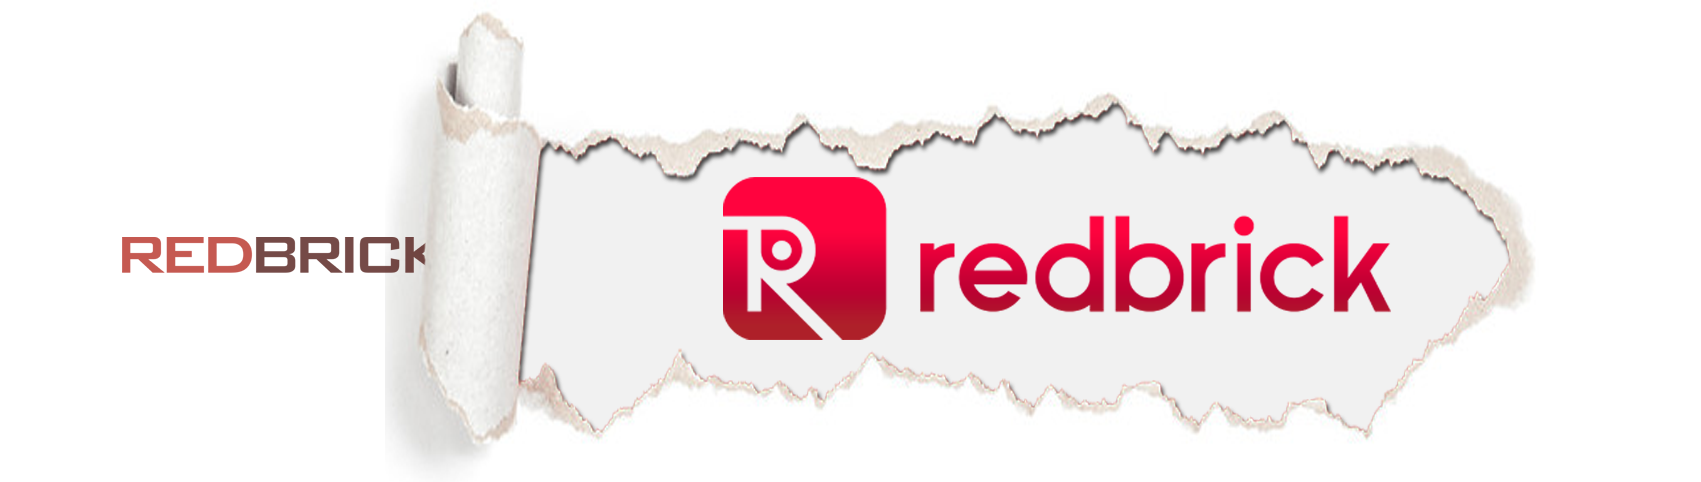 Redbrick Rebranding Image01 - Redbrick Mortgage Advisory